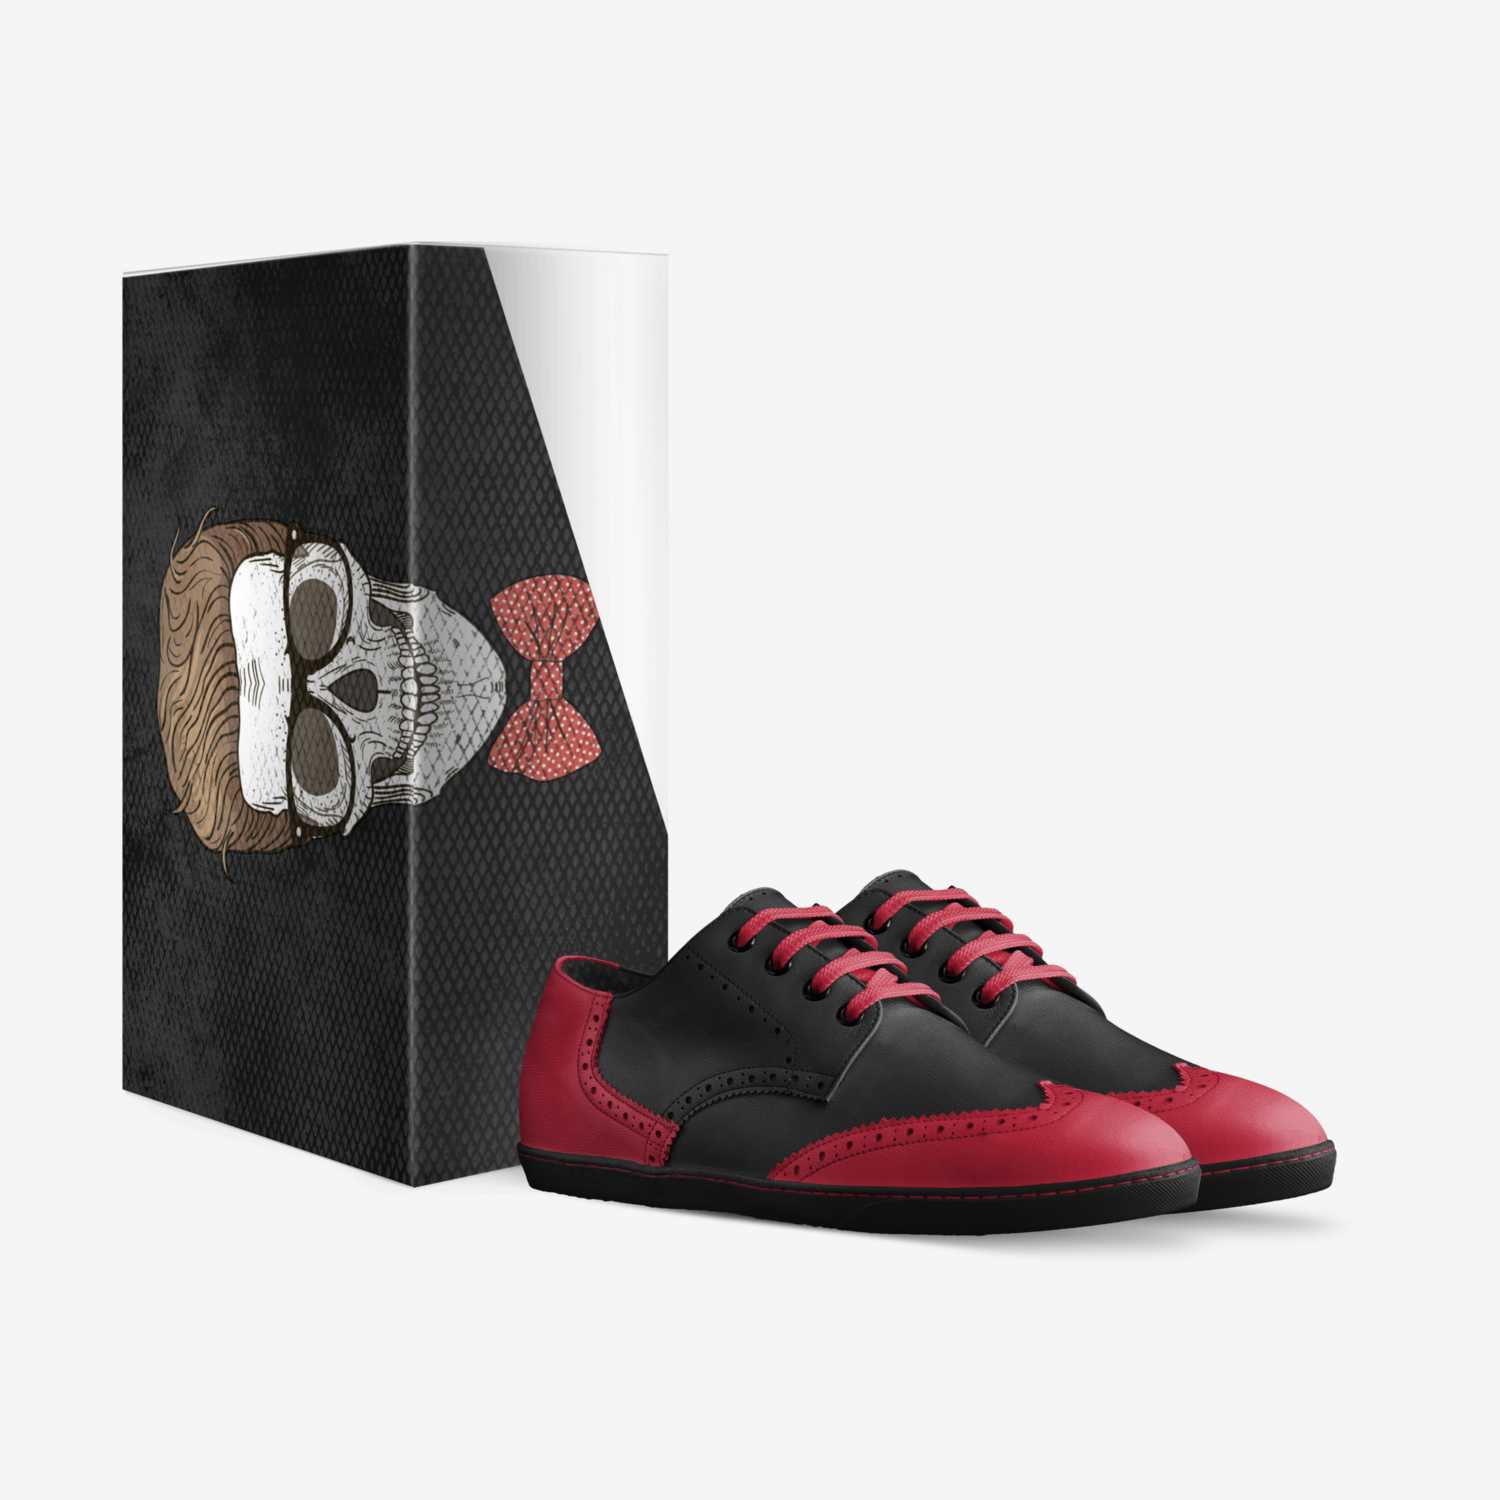 bibi custom made in Italy shoes by Robel Yemane | Box view